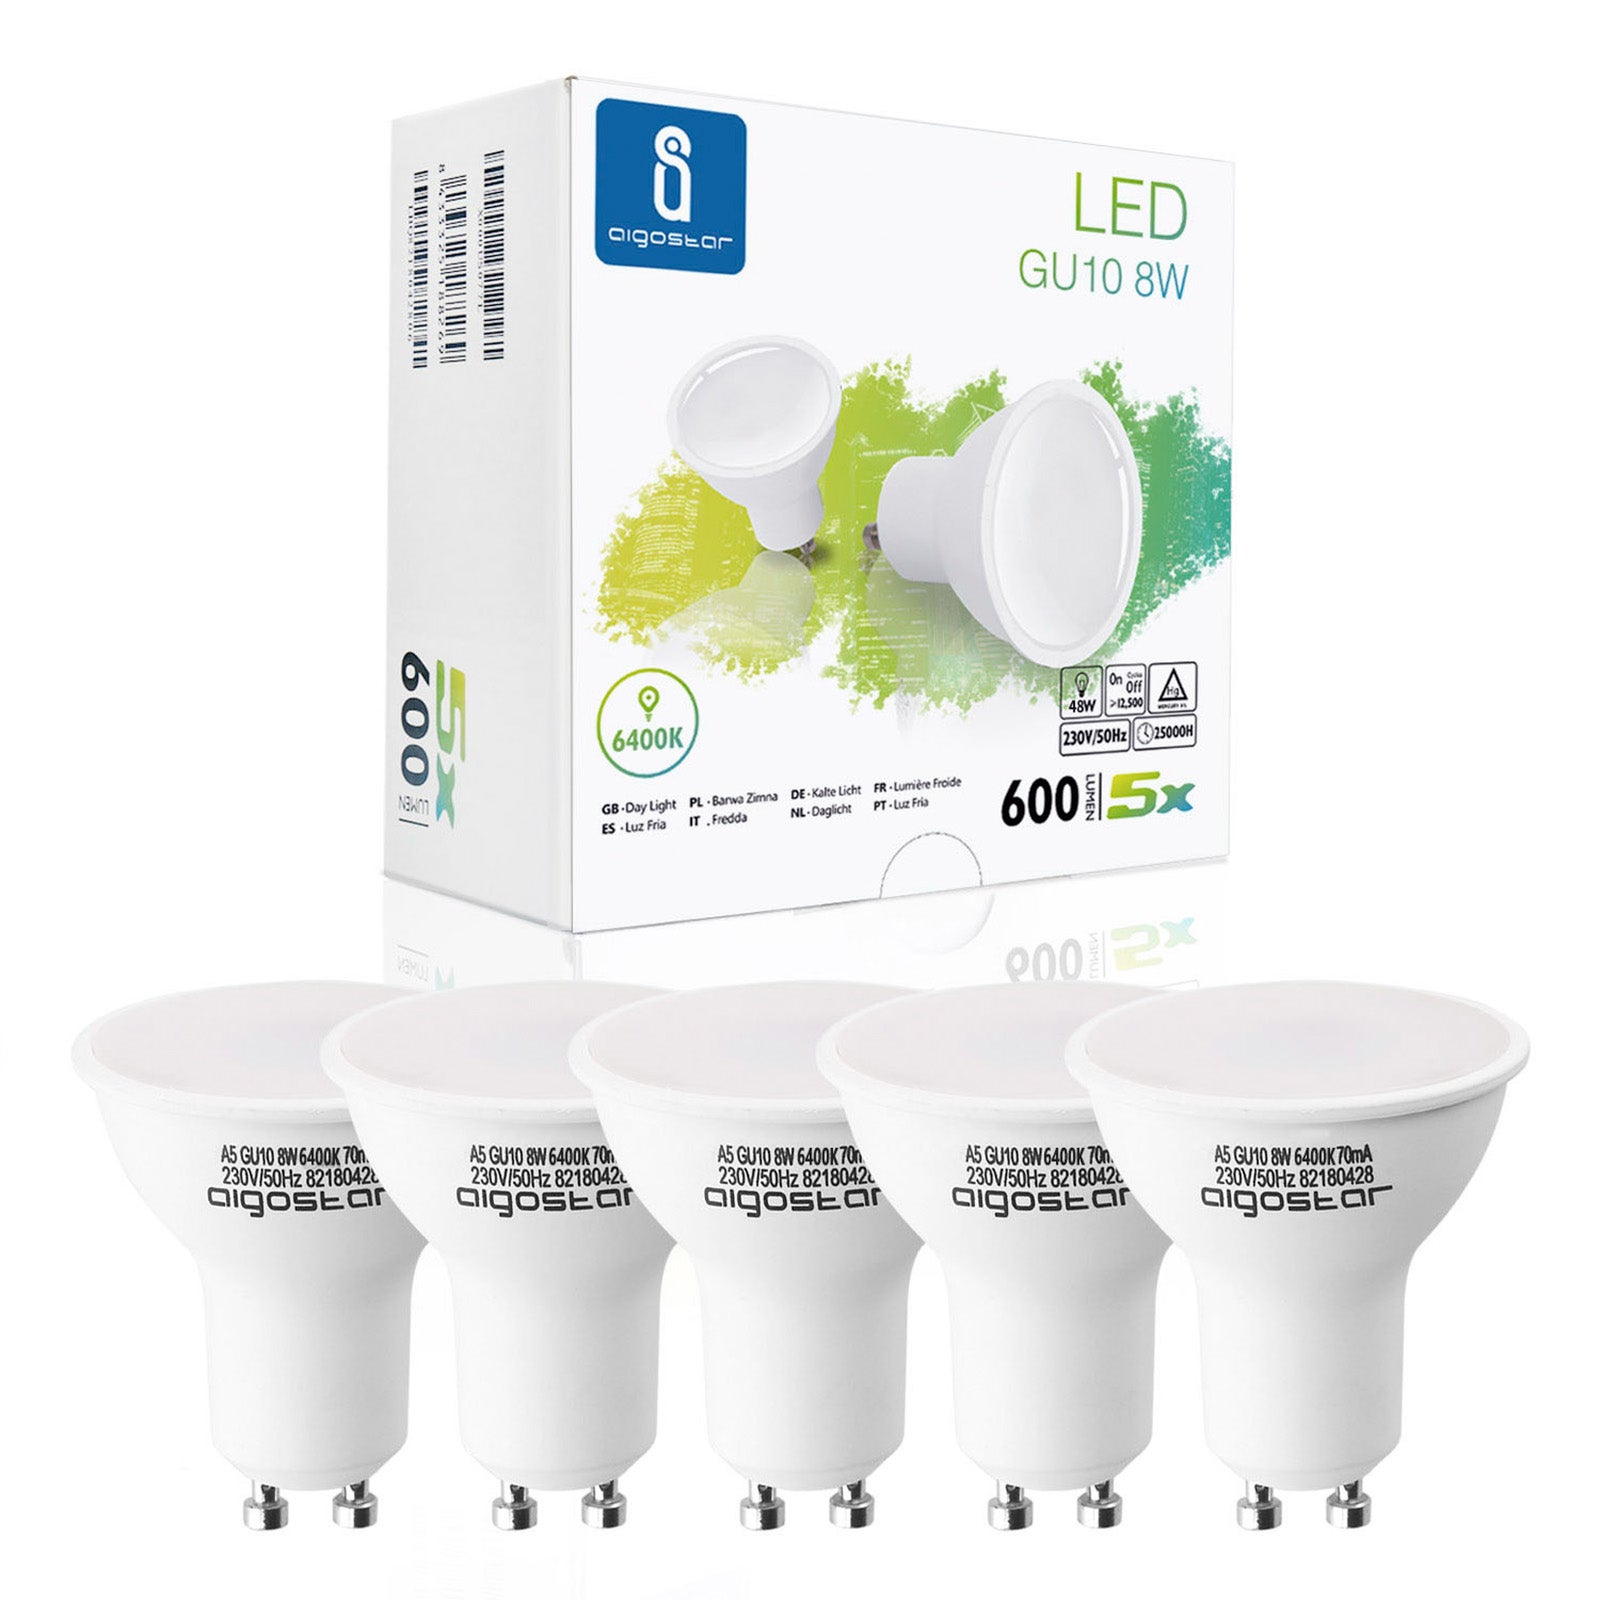 Ampoule LED GU10/5W/230V 3000-6500K Wi-Fi - Aigostar